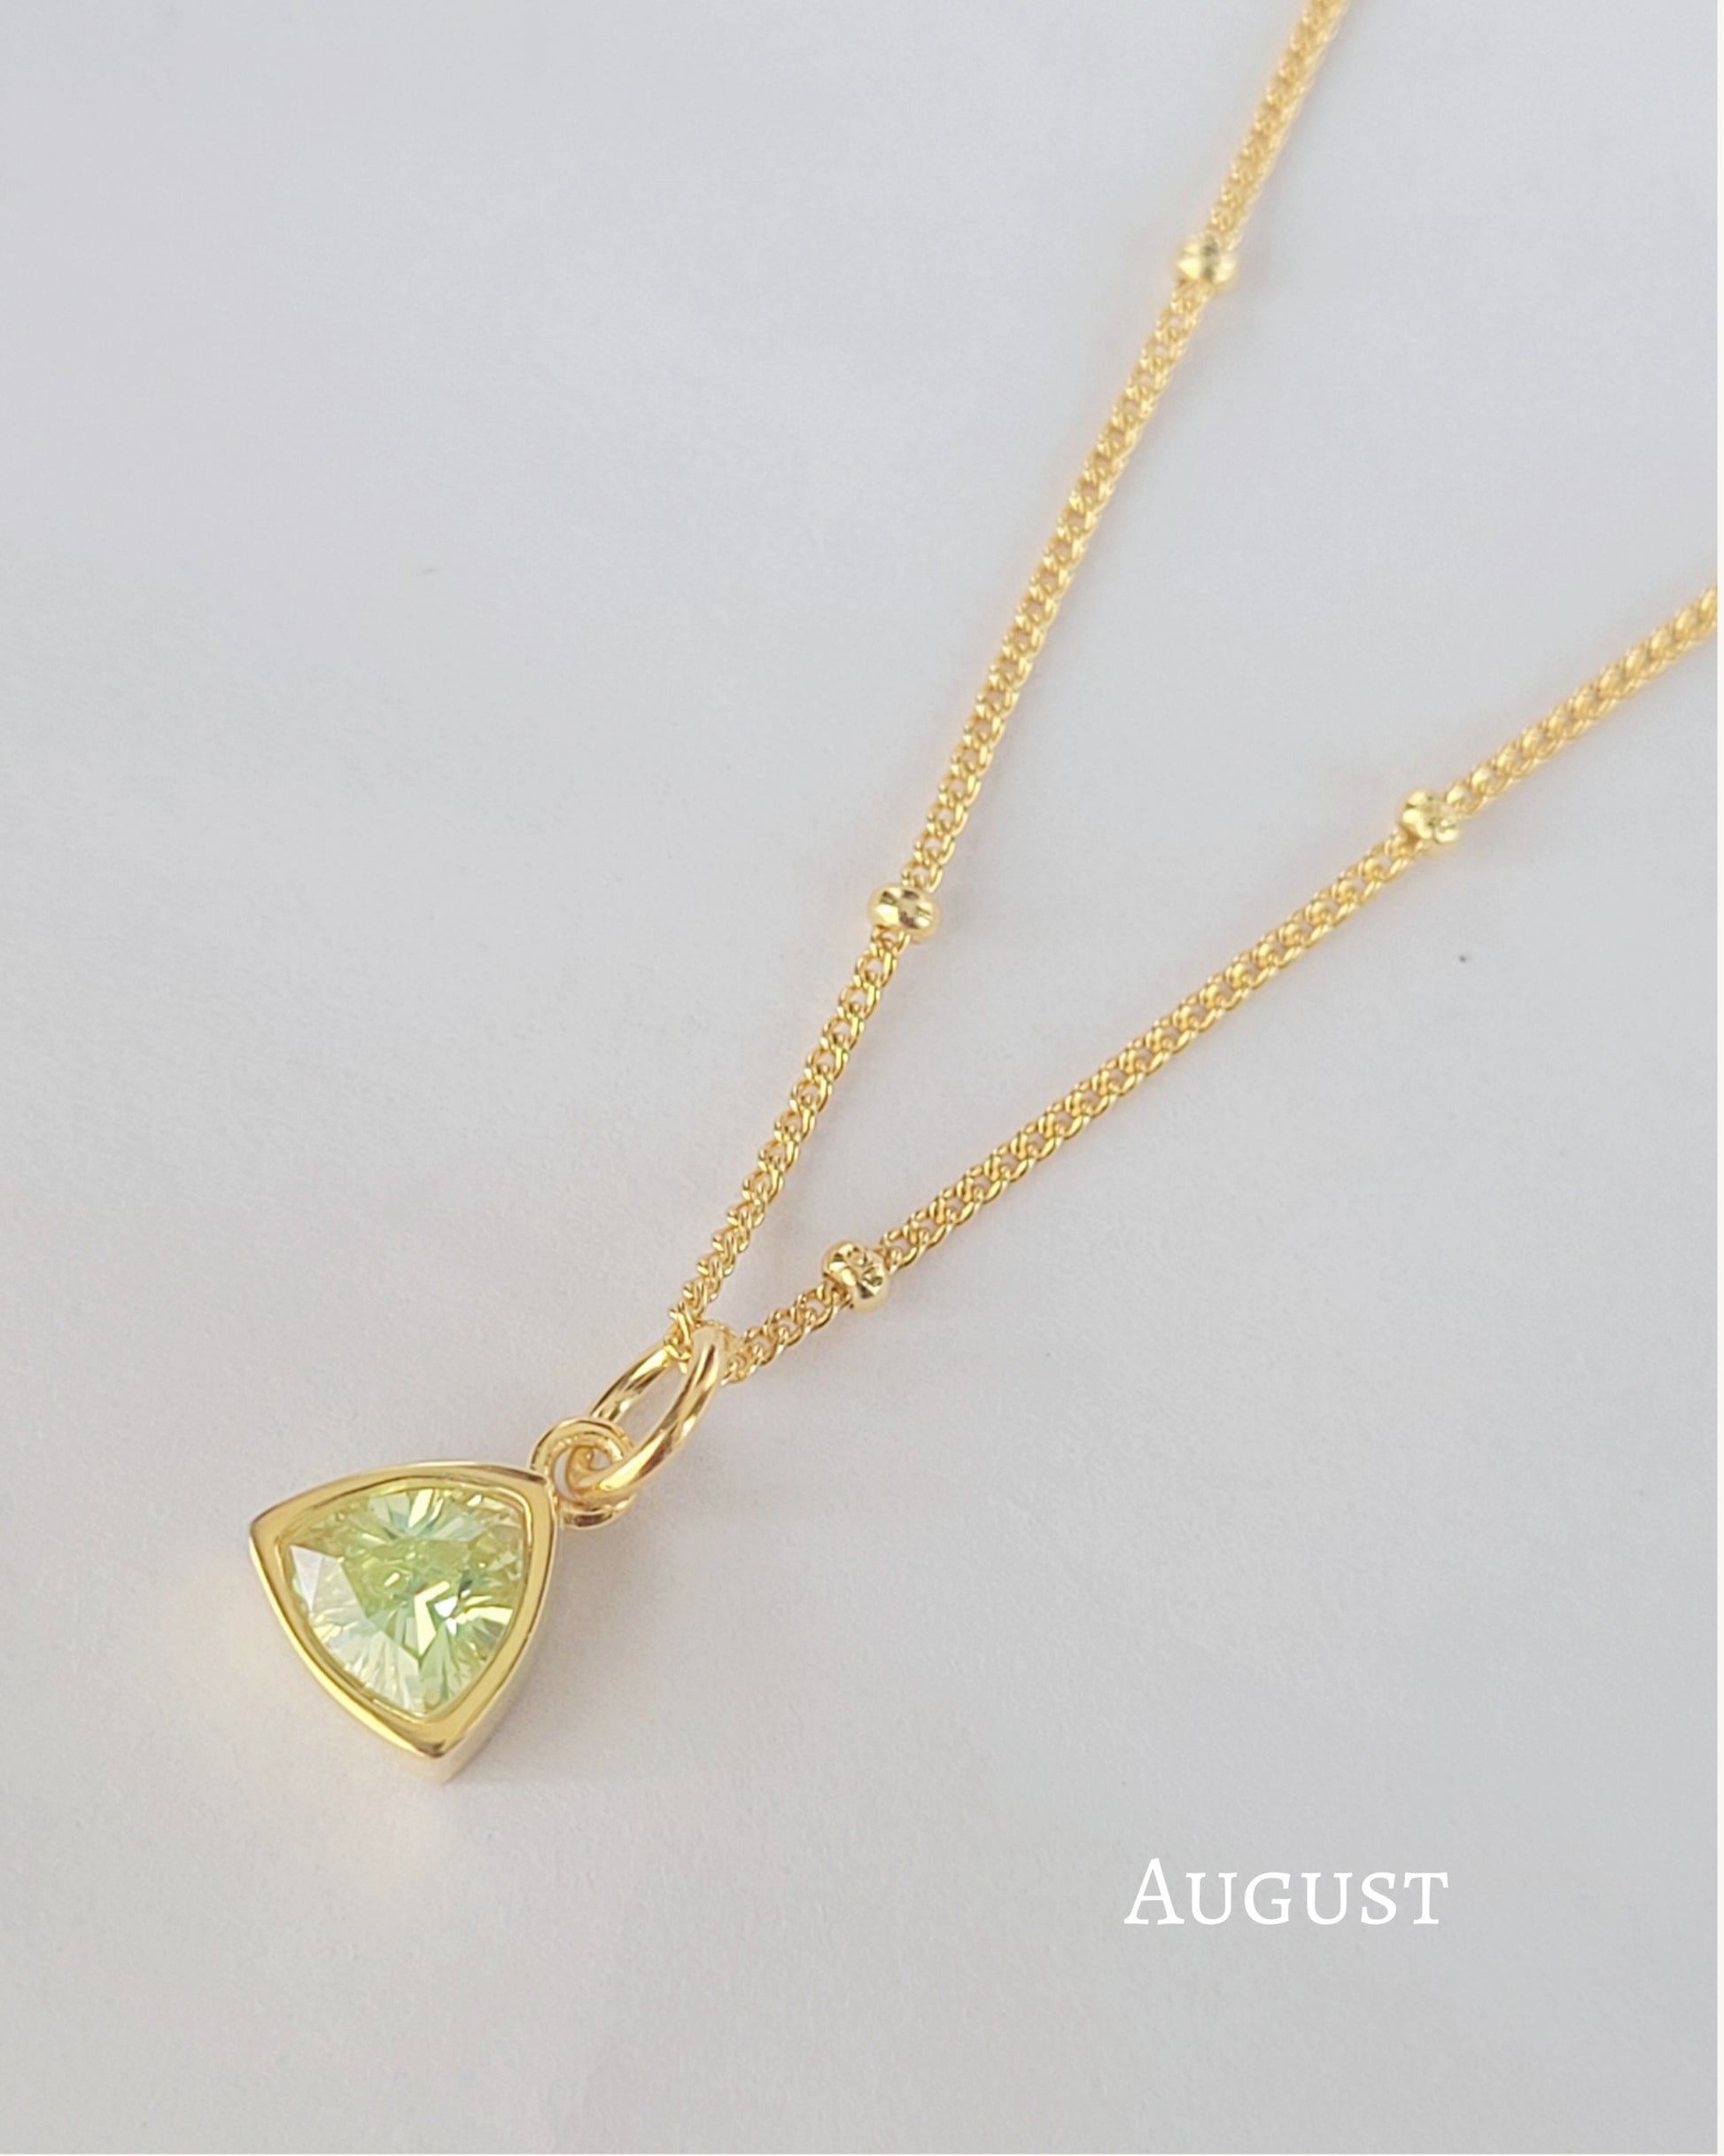 August birthstone necklace 